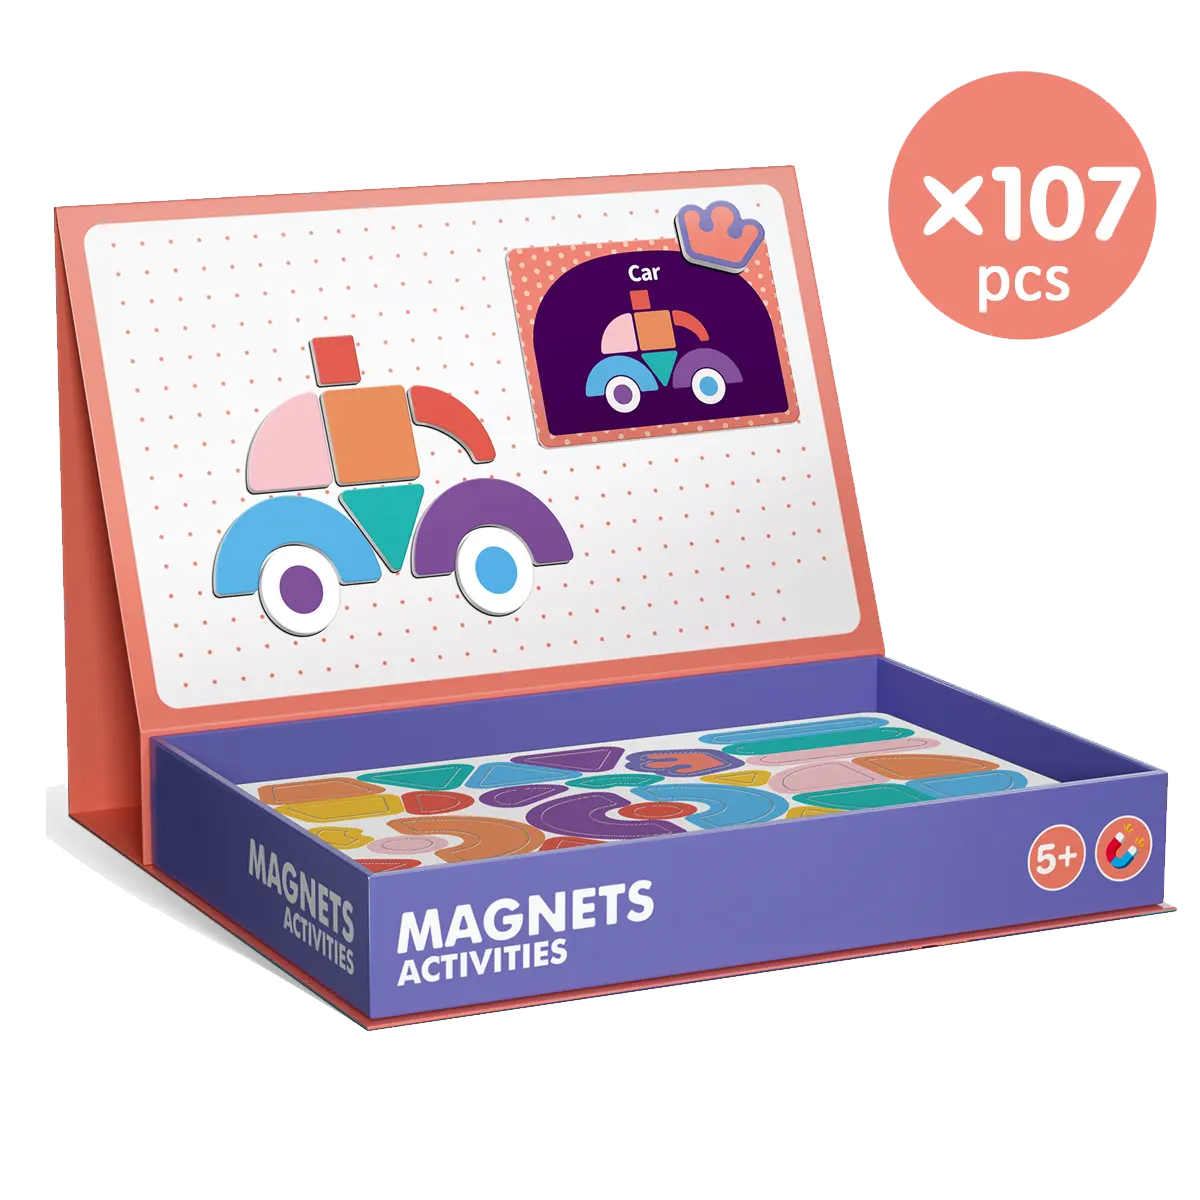 Novo quebra-cabeças de brinquedos, melhor qualidade, inteligência, brinquedos para crianças, 107 peças, ímãs, atividades, quebra-cabeças